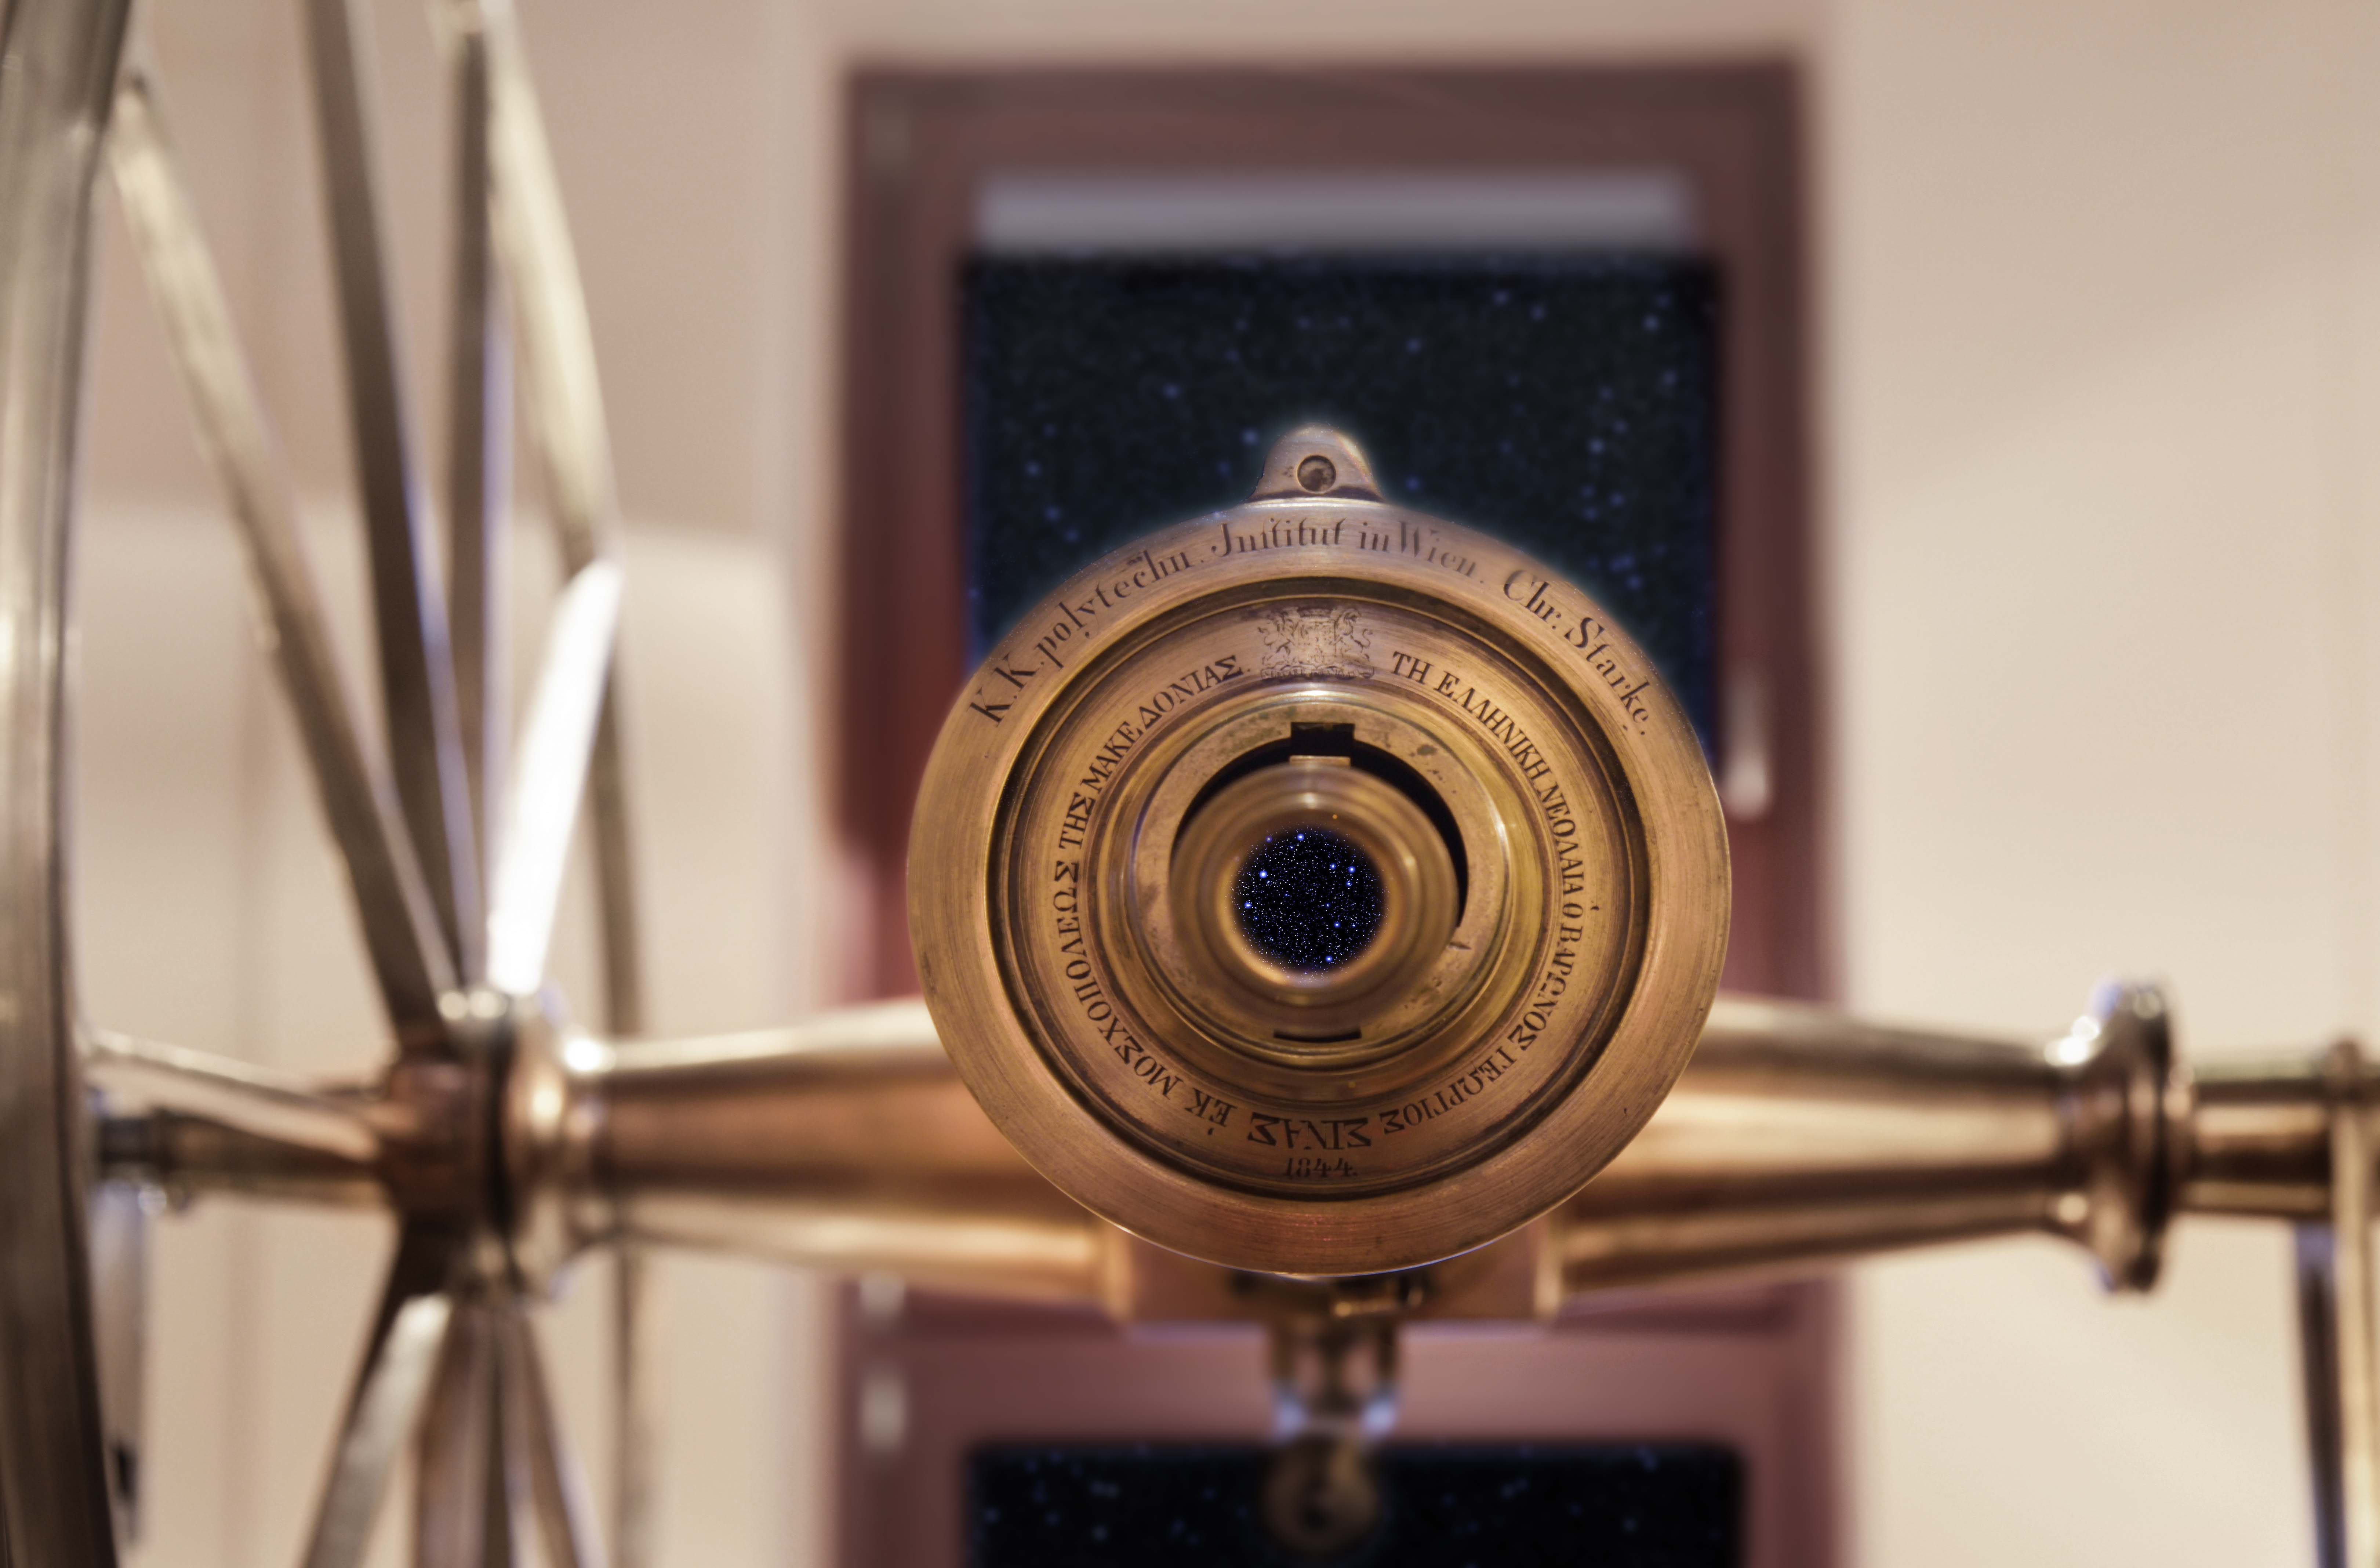 Το μεσημβρινό τηλεσκόπιο Starke. Χρησιμοποιήθηκε για την μέτρηση του χρόνου από το Αστεροσκοπείο από το 1846 έως το 1900 (φωτογραφία: Κων/νος Γεωργιάδης)